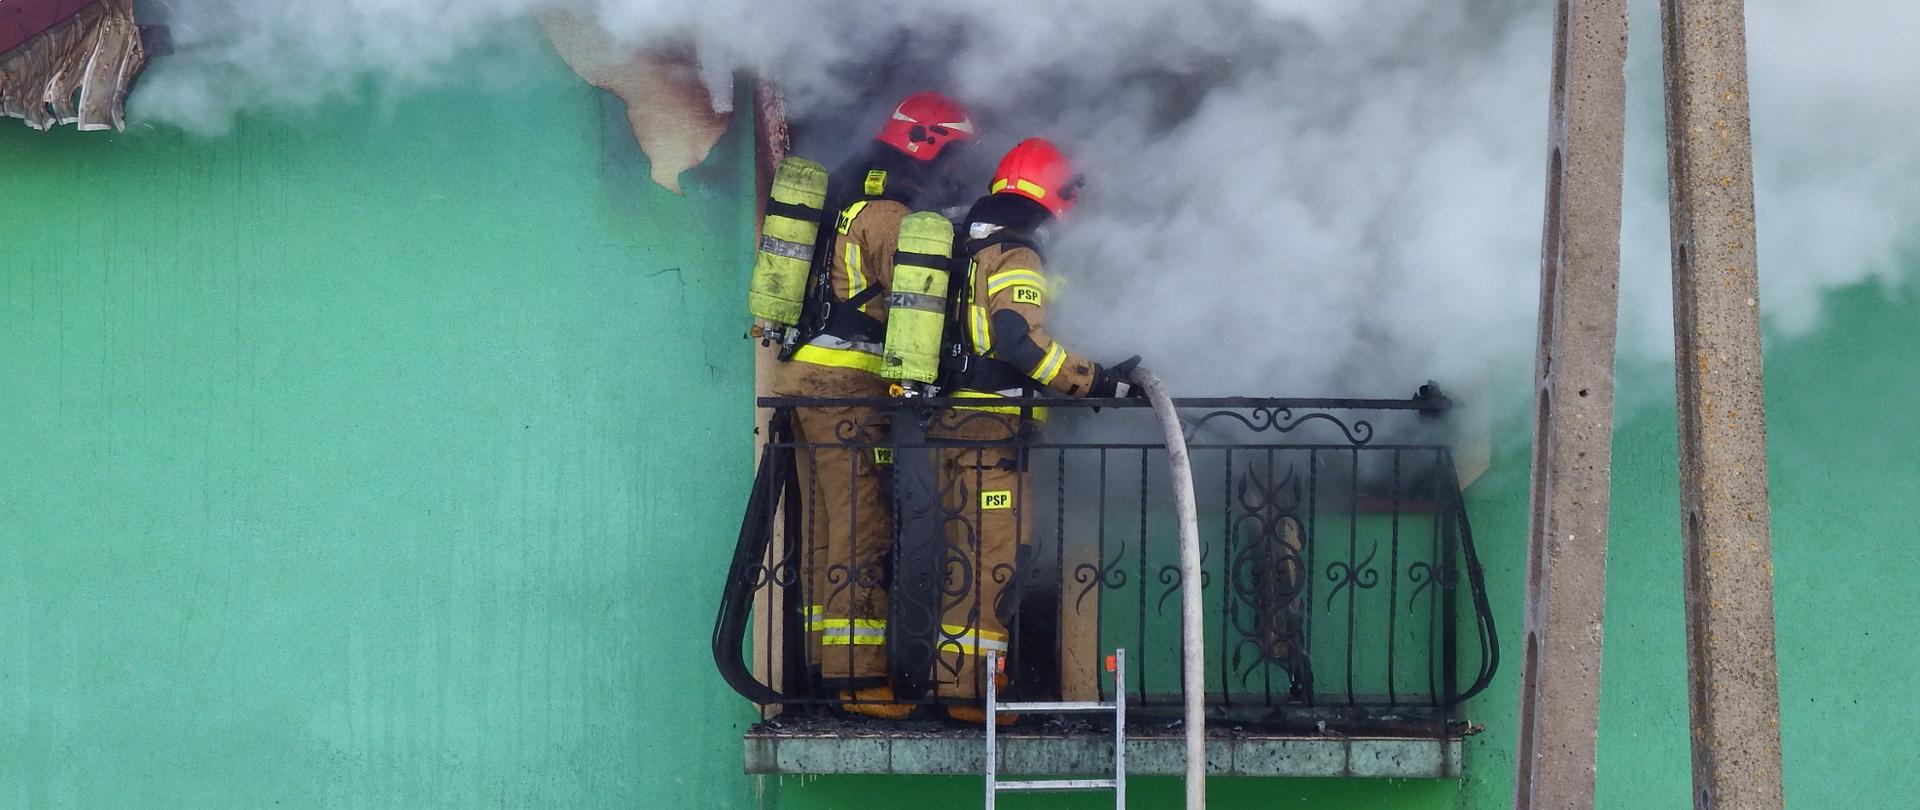 Zdjęcie przedstawia dwóch strażaków stojących na balkonie na tle zielonej ściany domu. Ubrani są w obrania bojowe, na plecach mają aparaty powietrzne a na głowach czerwone hełmy. Z okna wydobywają się kłęby dymu spowijające strażaków. Do balkonu przystawiona jest drabina, a przez balustradę przełożony jest napełniony wodą wąż strażacki.